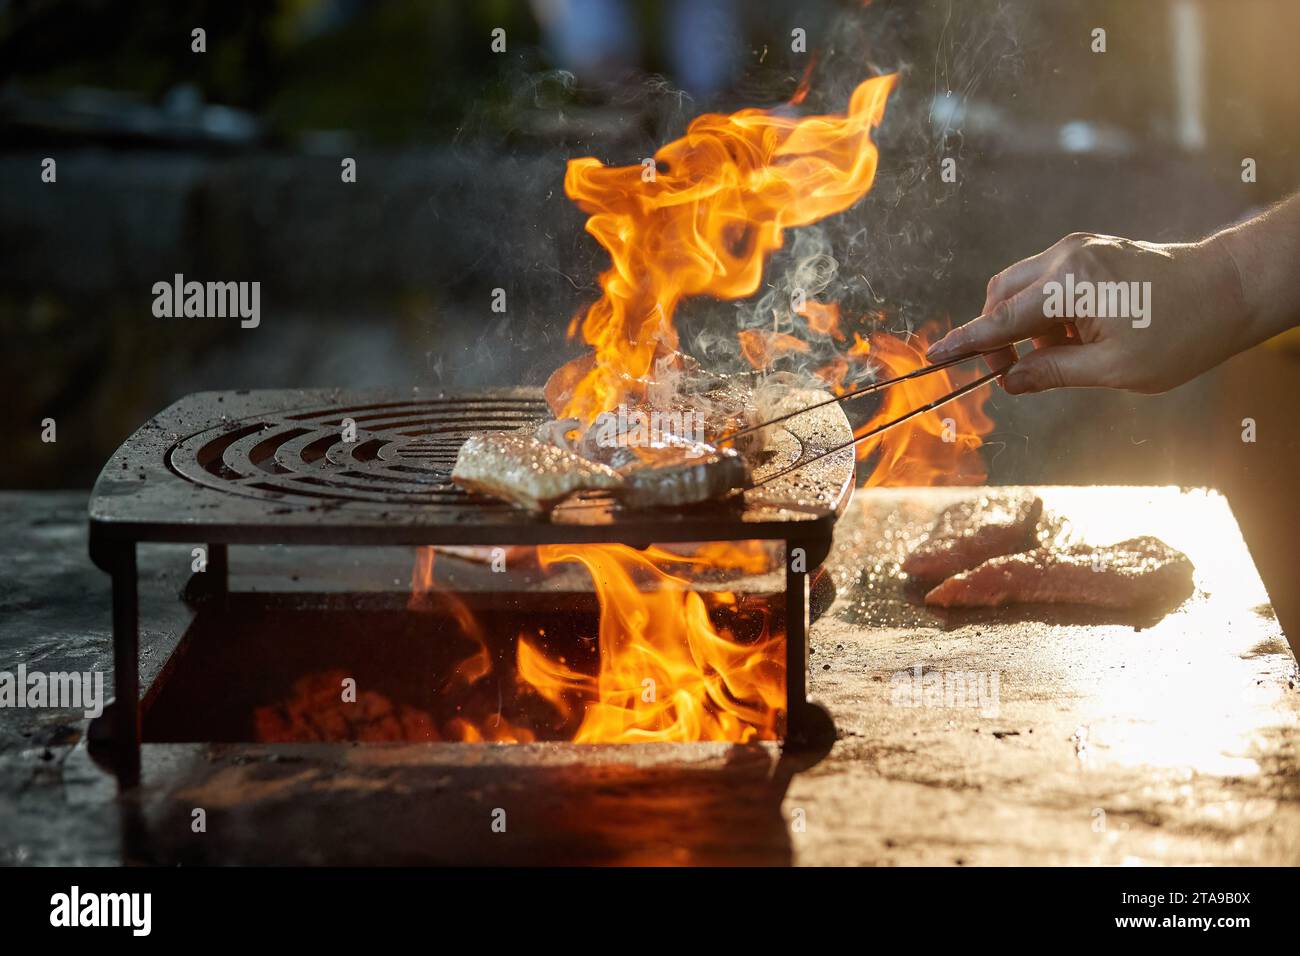 Ein Koch bereitet ein Steak auf einem Grill im Freien zu. Nahaufnahme des Kochens beim Gartenfest, Flammen, geringe Tiefe des Feldes, sehr bunter, verschwommener Hintergrund, Stockfoto